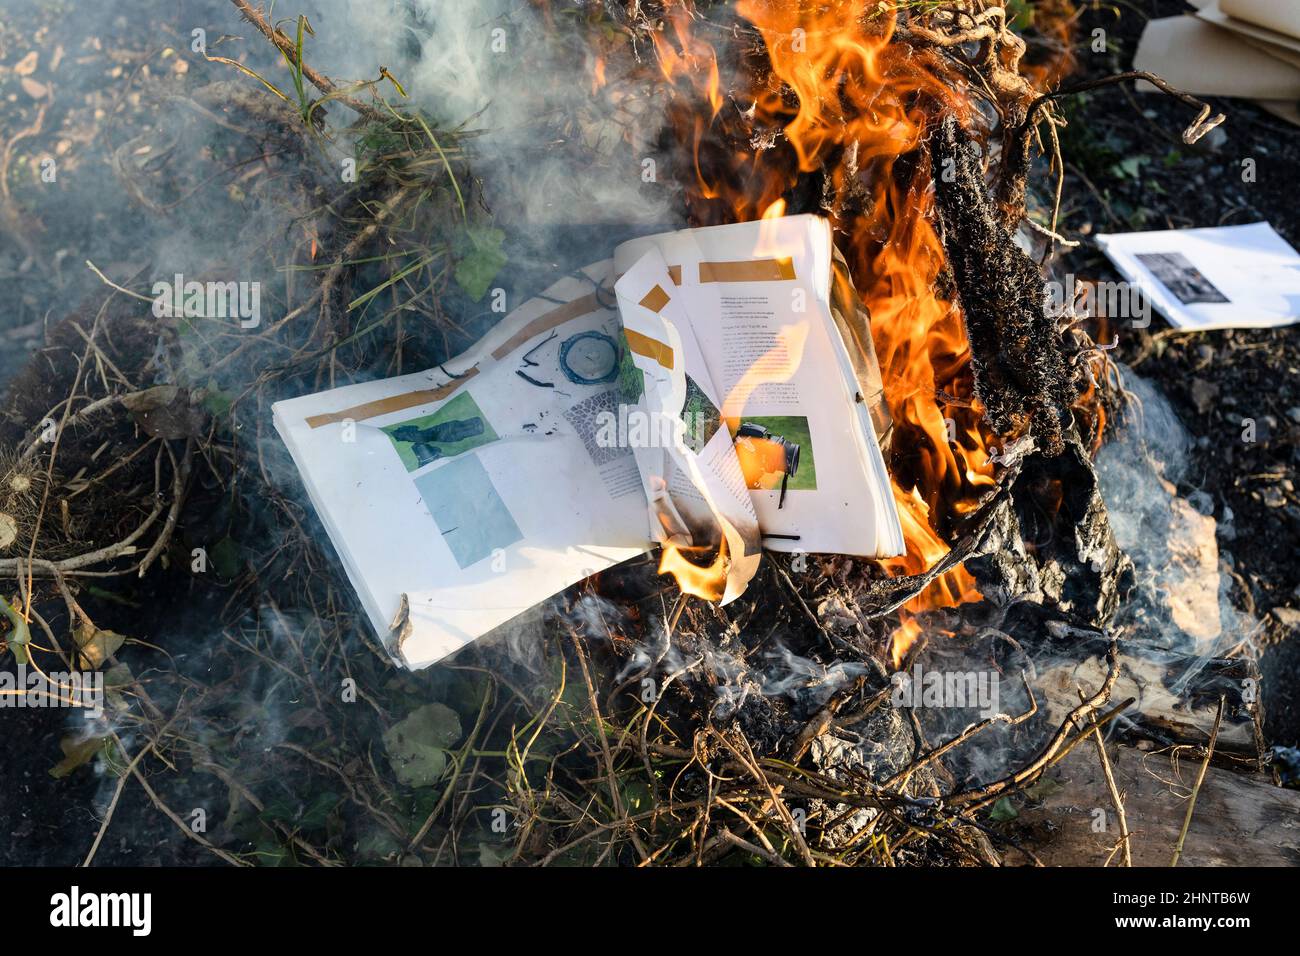 quema de libros de texto sobre fotografía en ramas Foto de stock